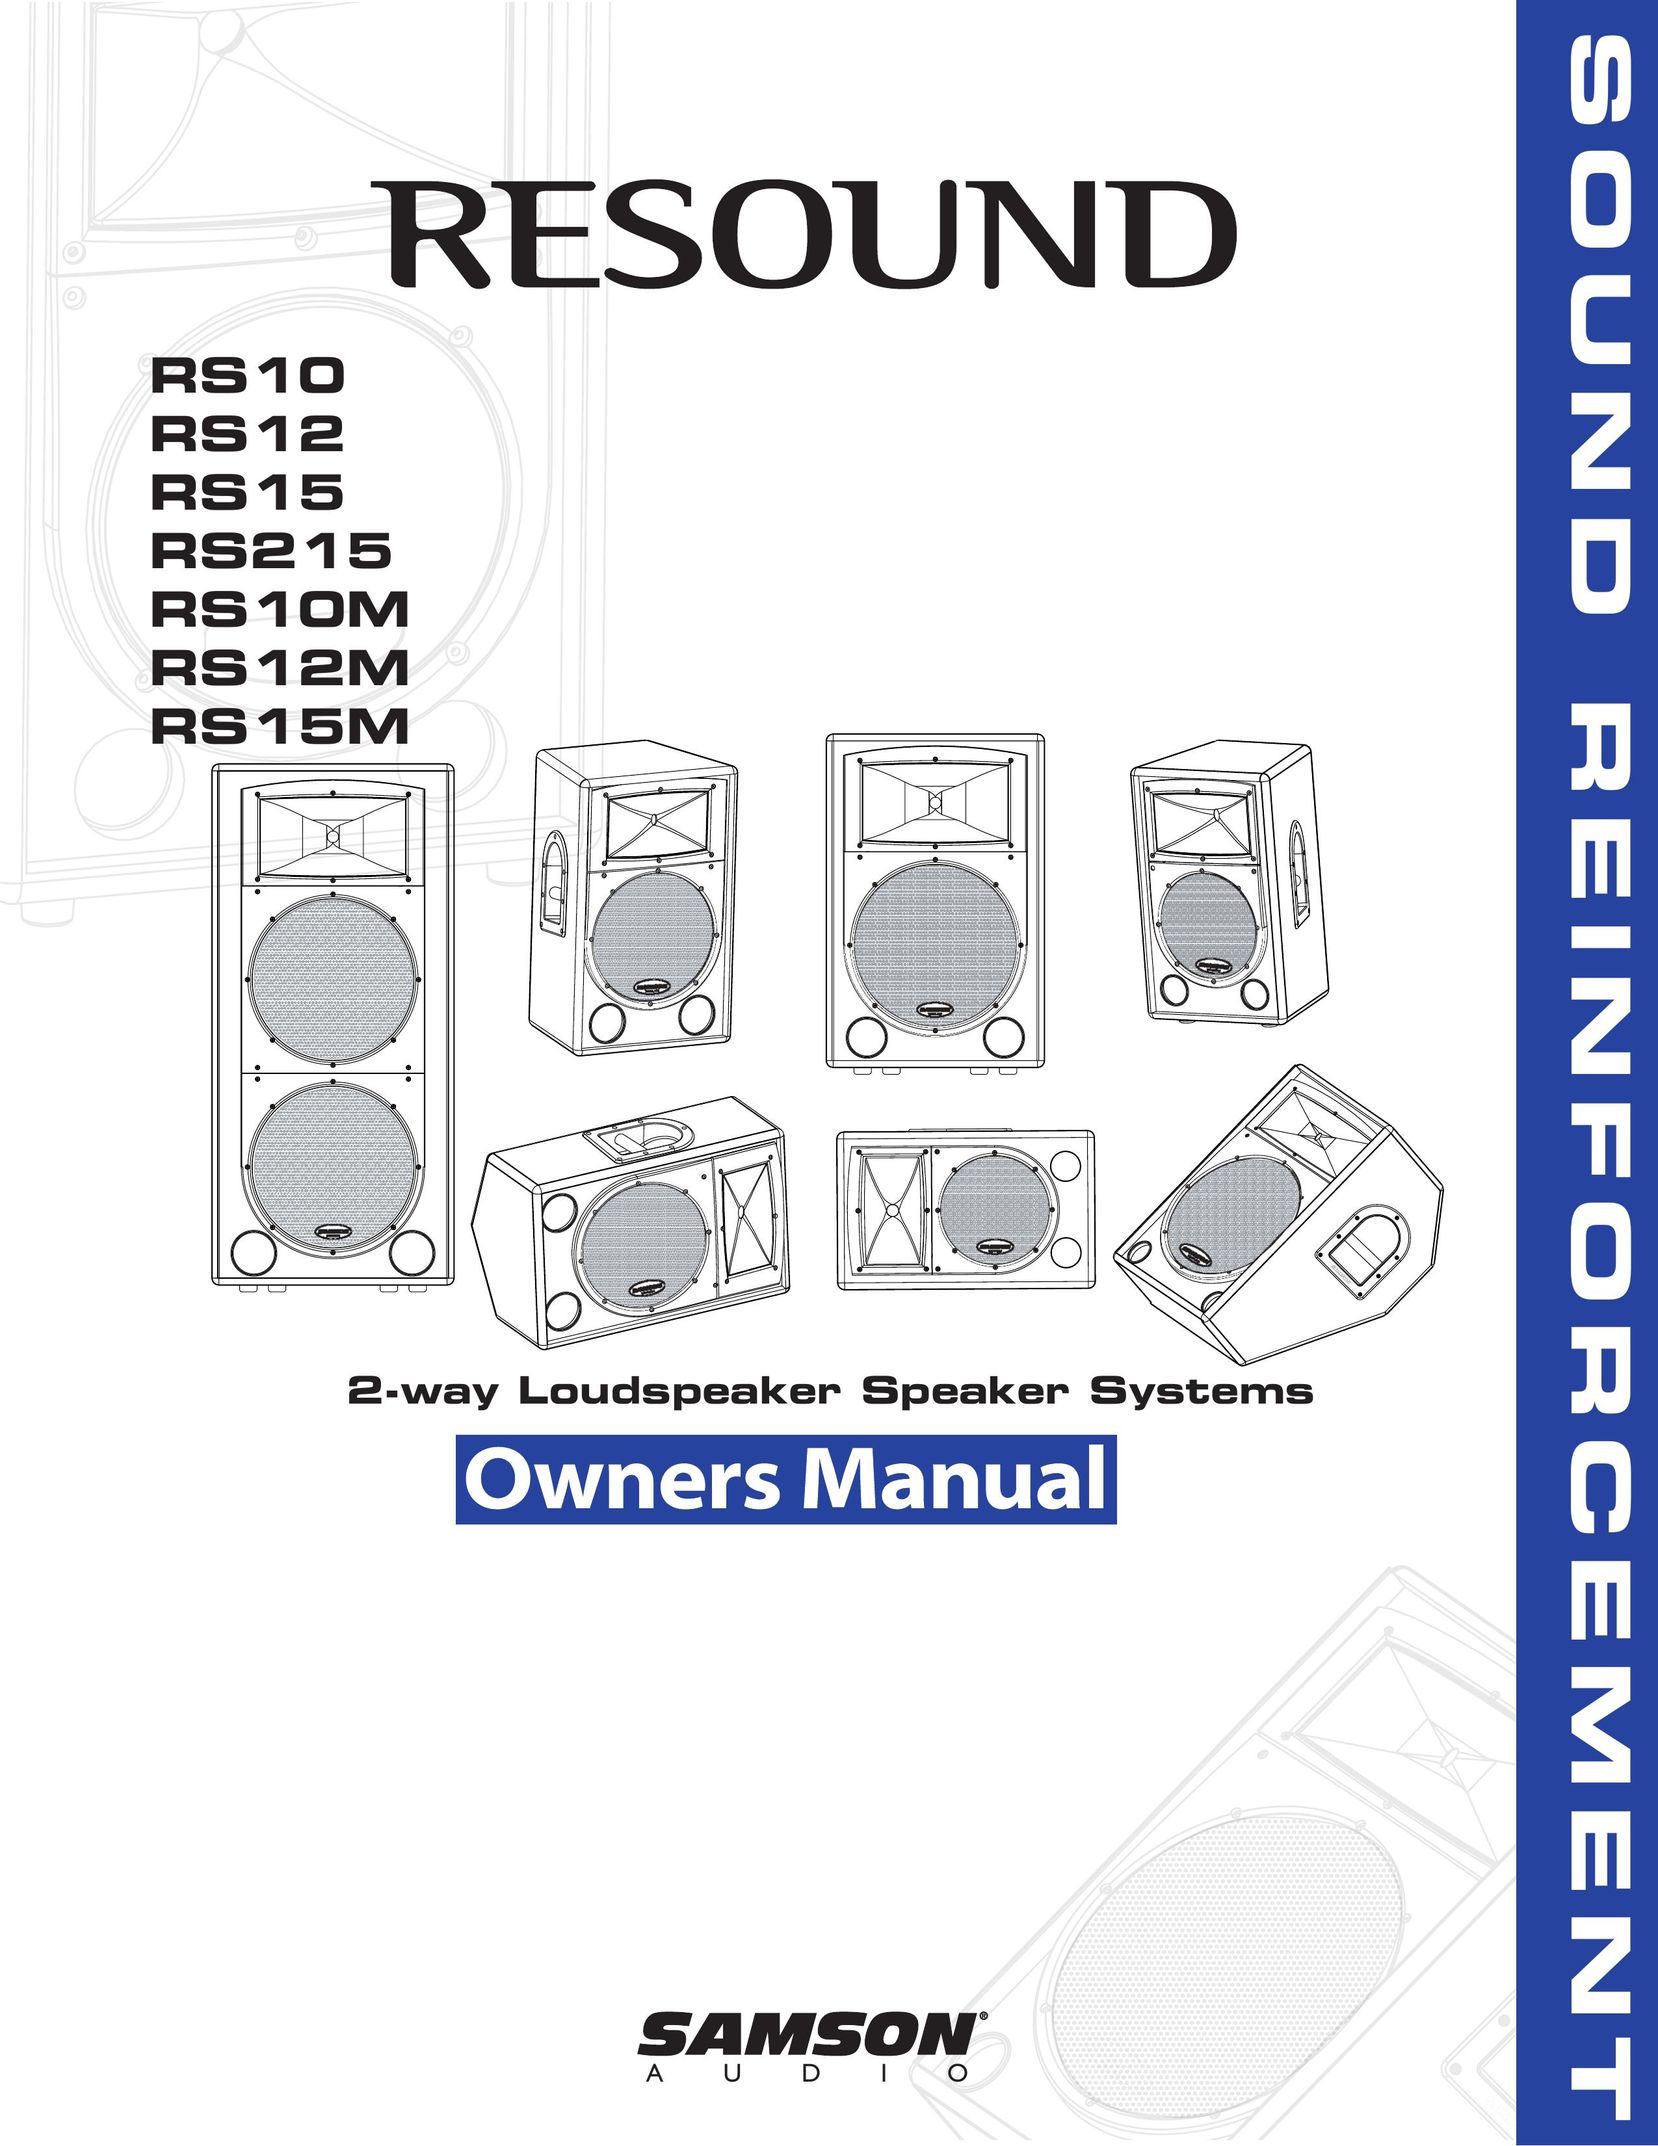 Samson RS12 Portable Speaker User Manual